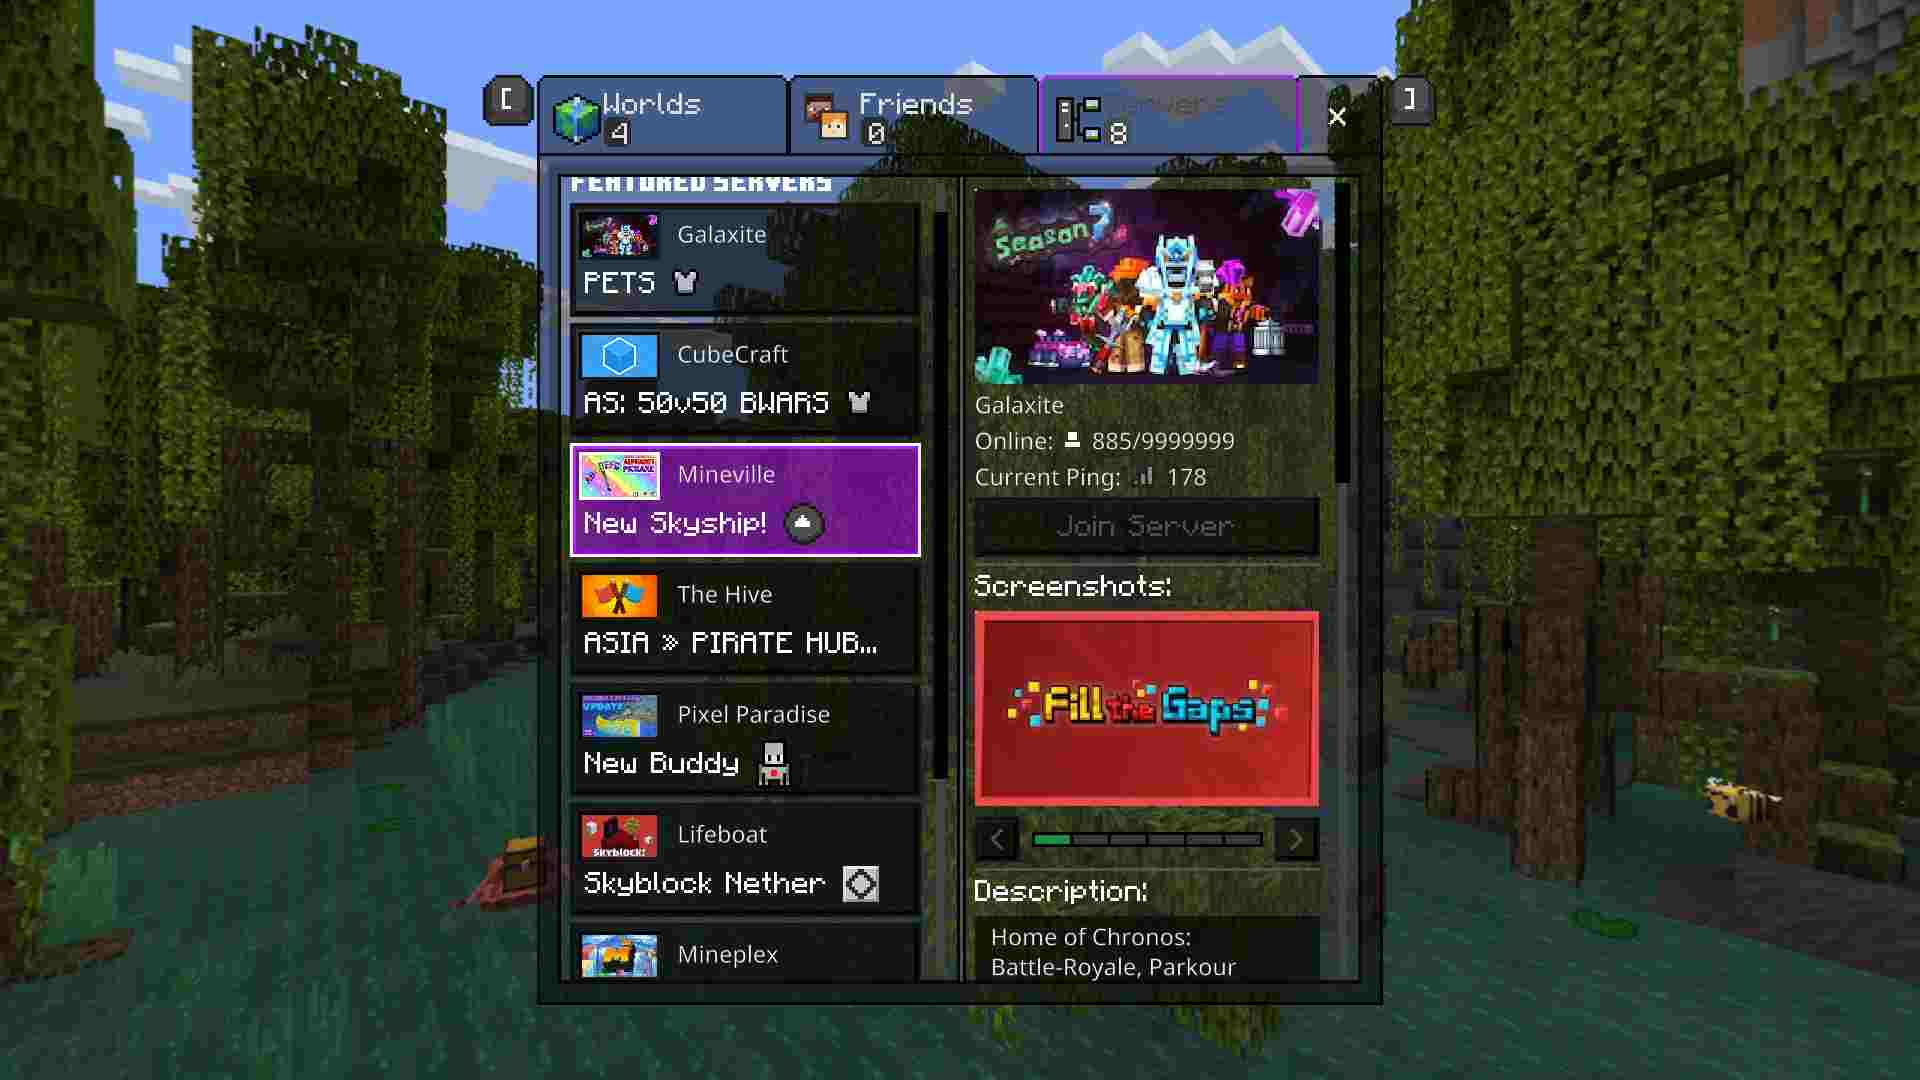 Minecraft Purple Colour UI